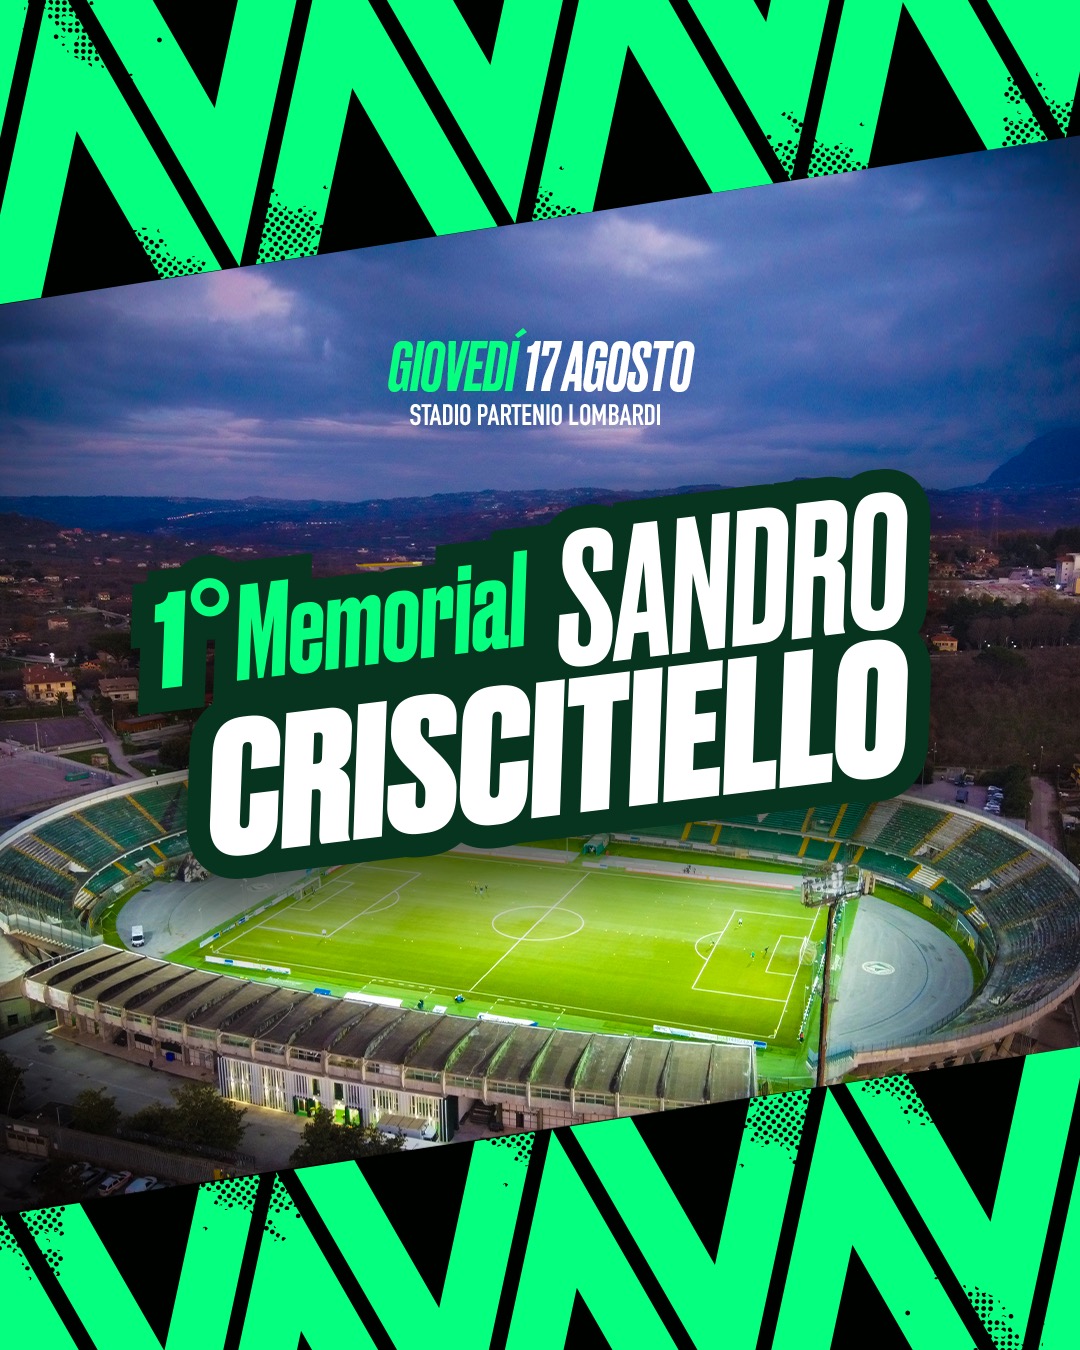 Avellino, Memorial "Sandro Criscitiello": i dettagli dell'evento